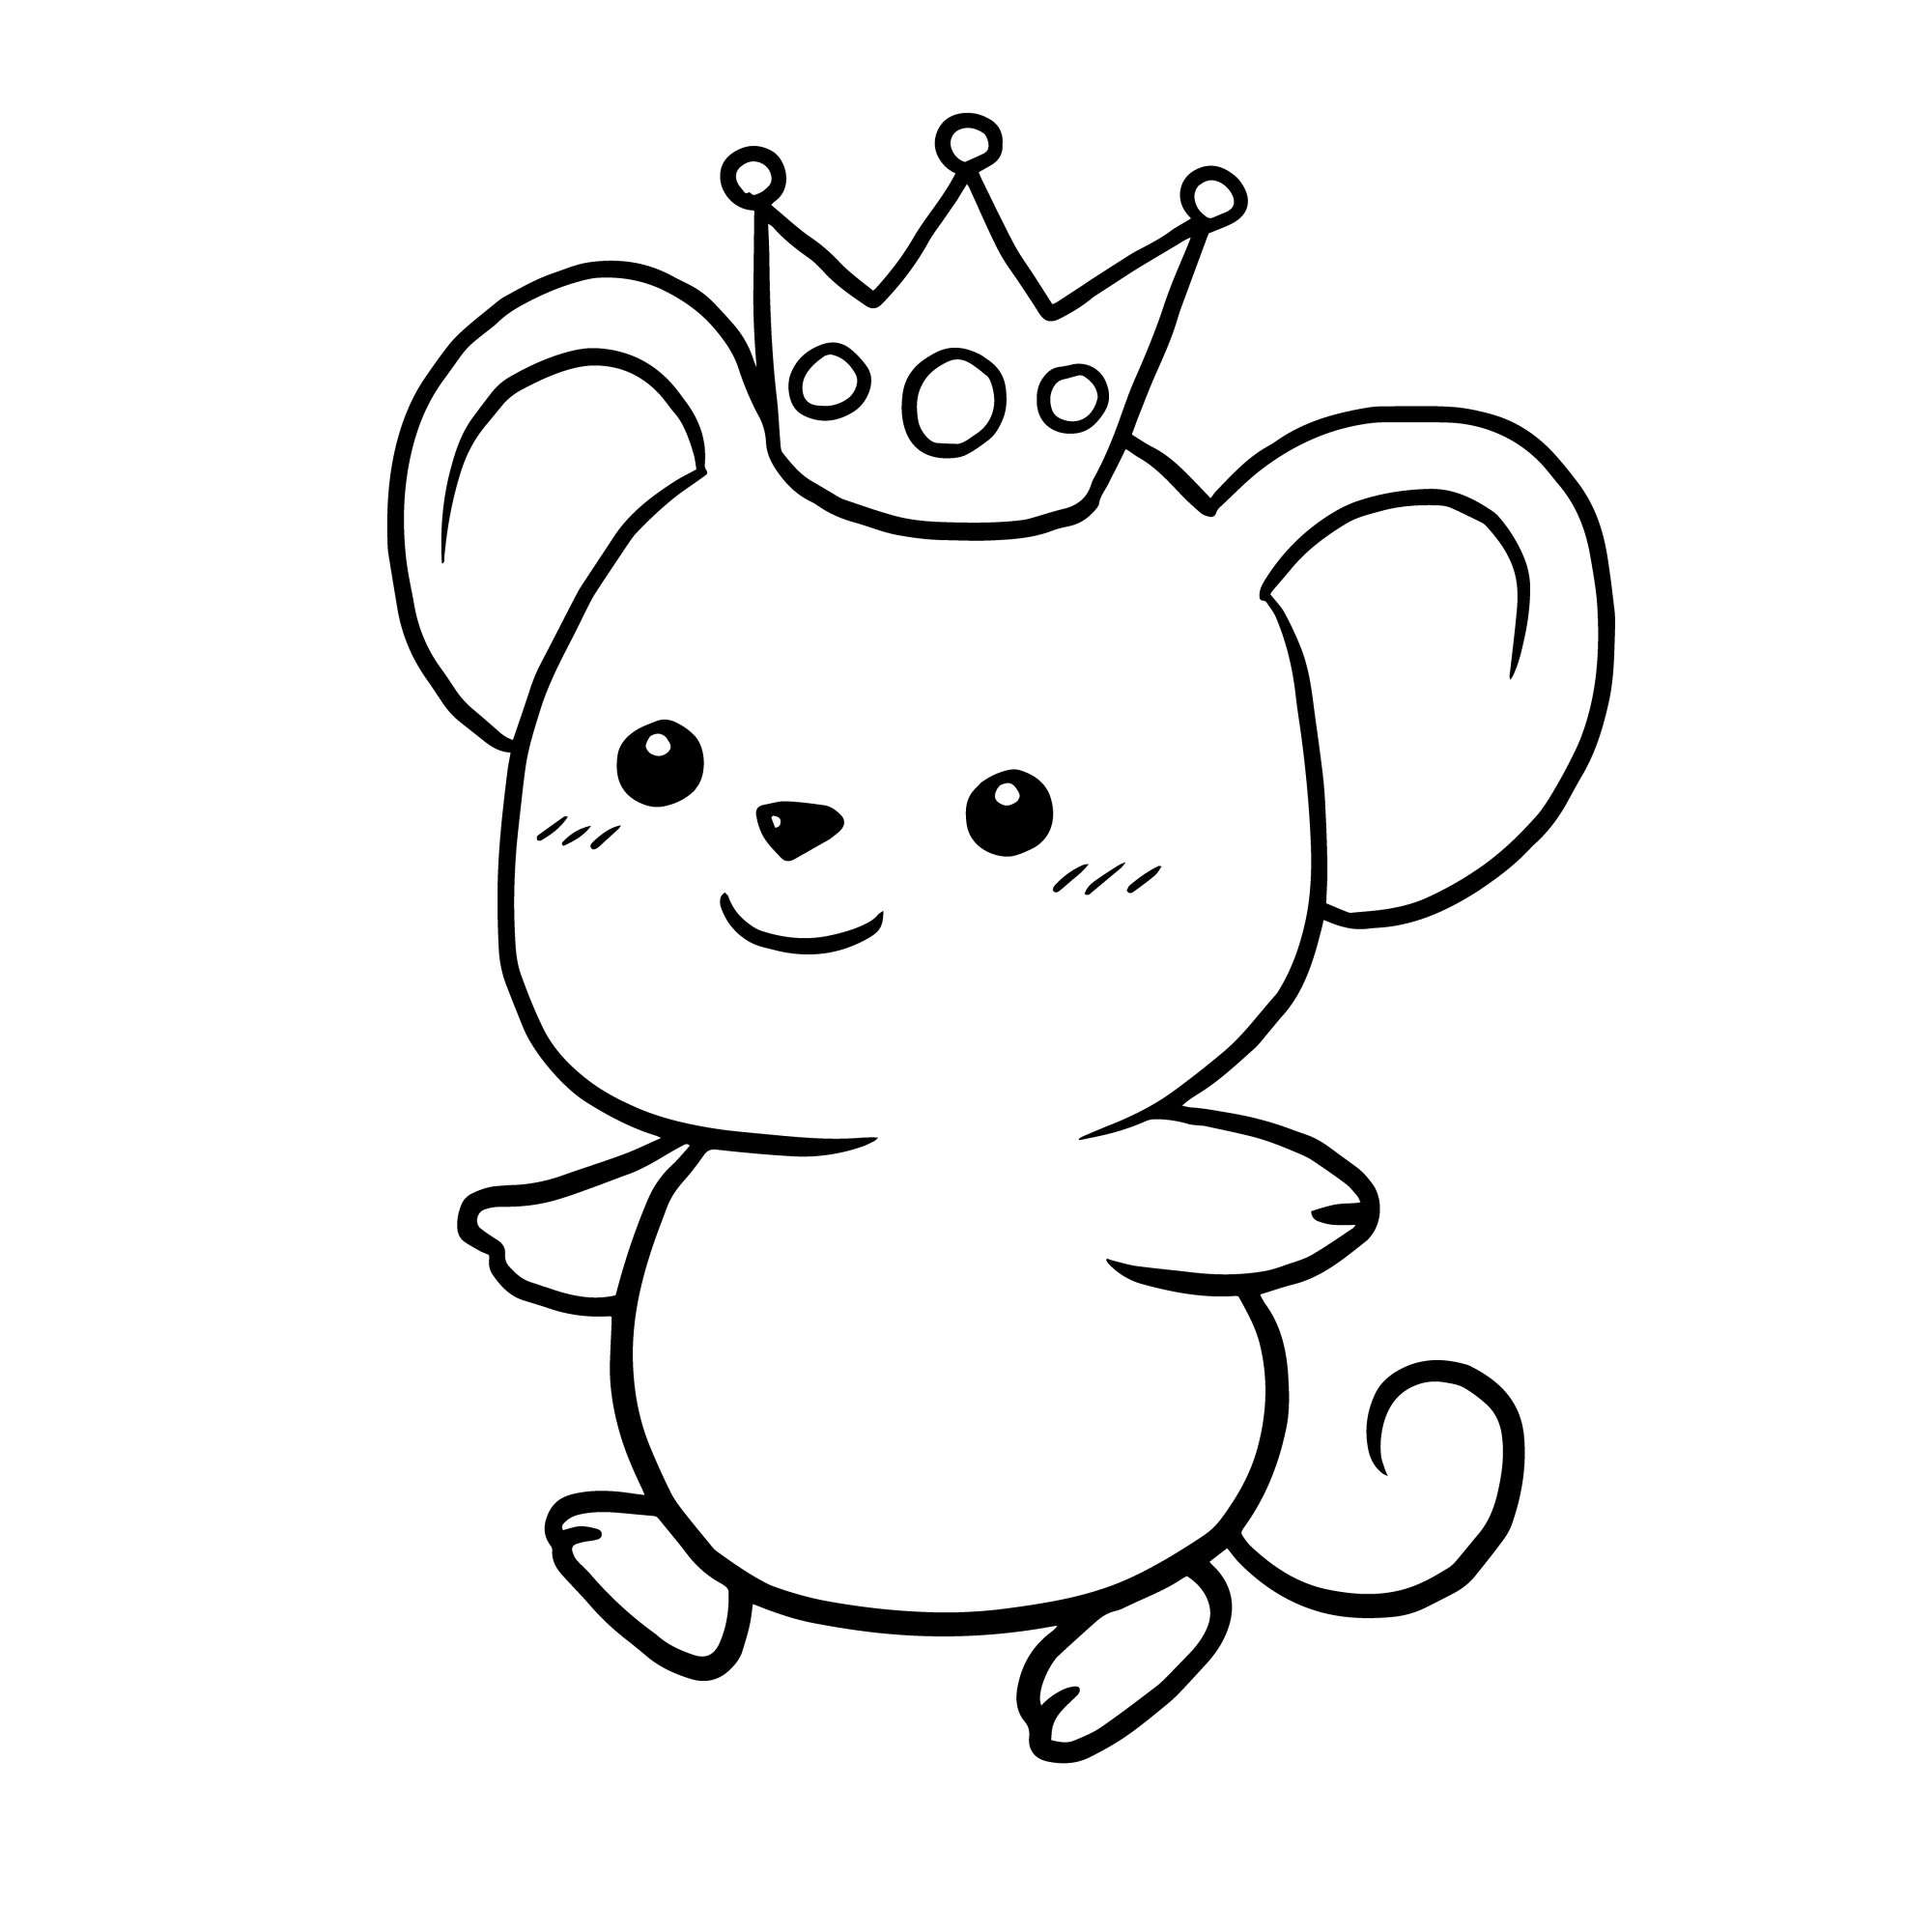 Раскраска для детей: мышка с короной на голове